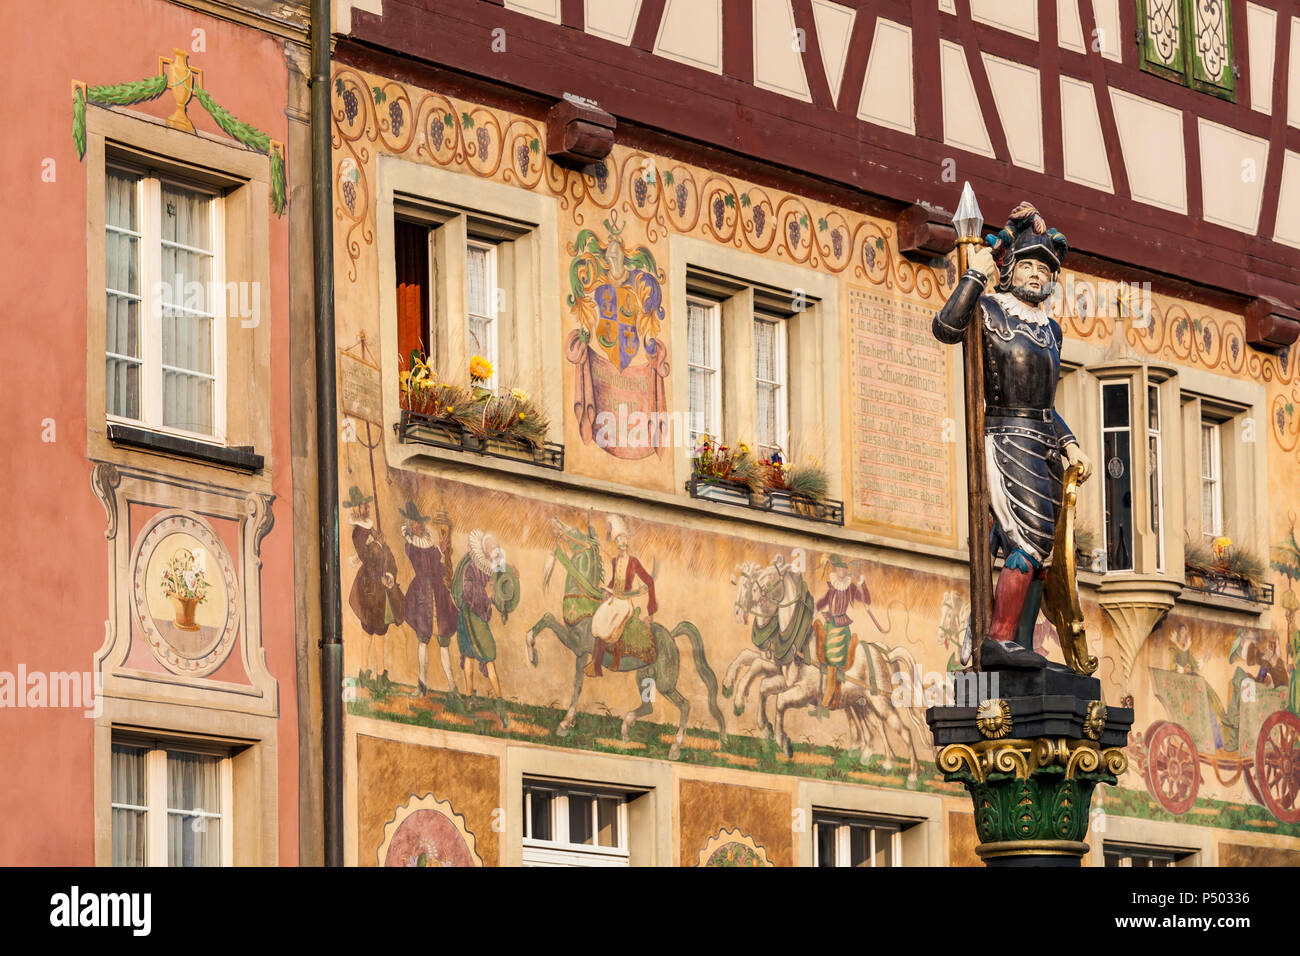 Suiza, Stein am Rhein, Casco antiguo, casas históricas en la plaza del ayuntamiento, pinturas al fresco, escultura en Fountain Foto de stock